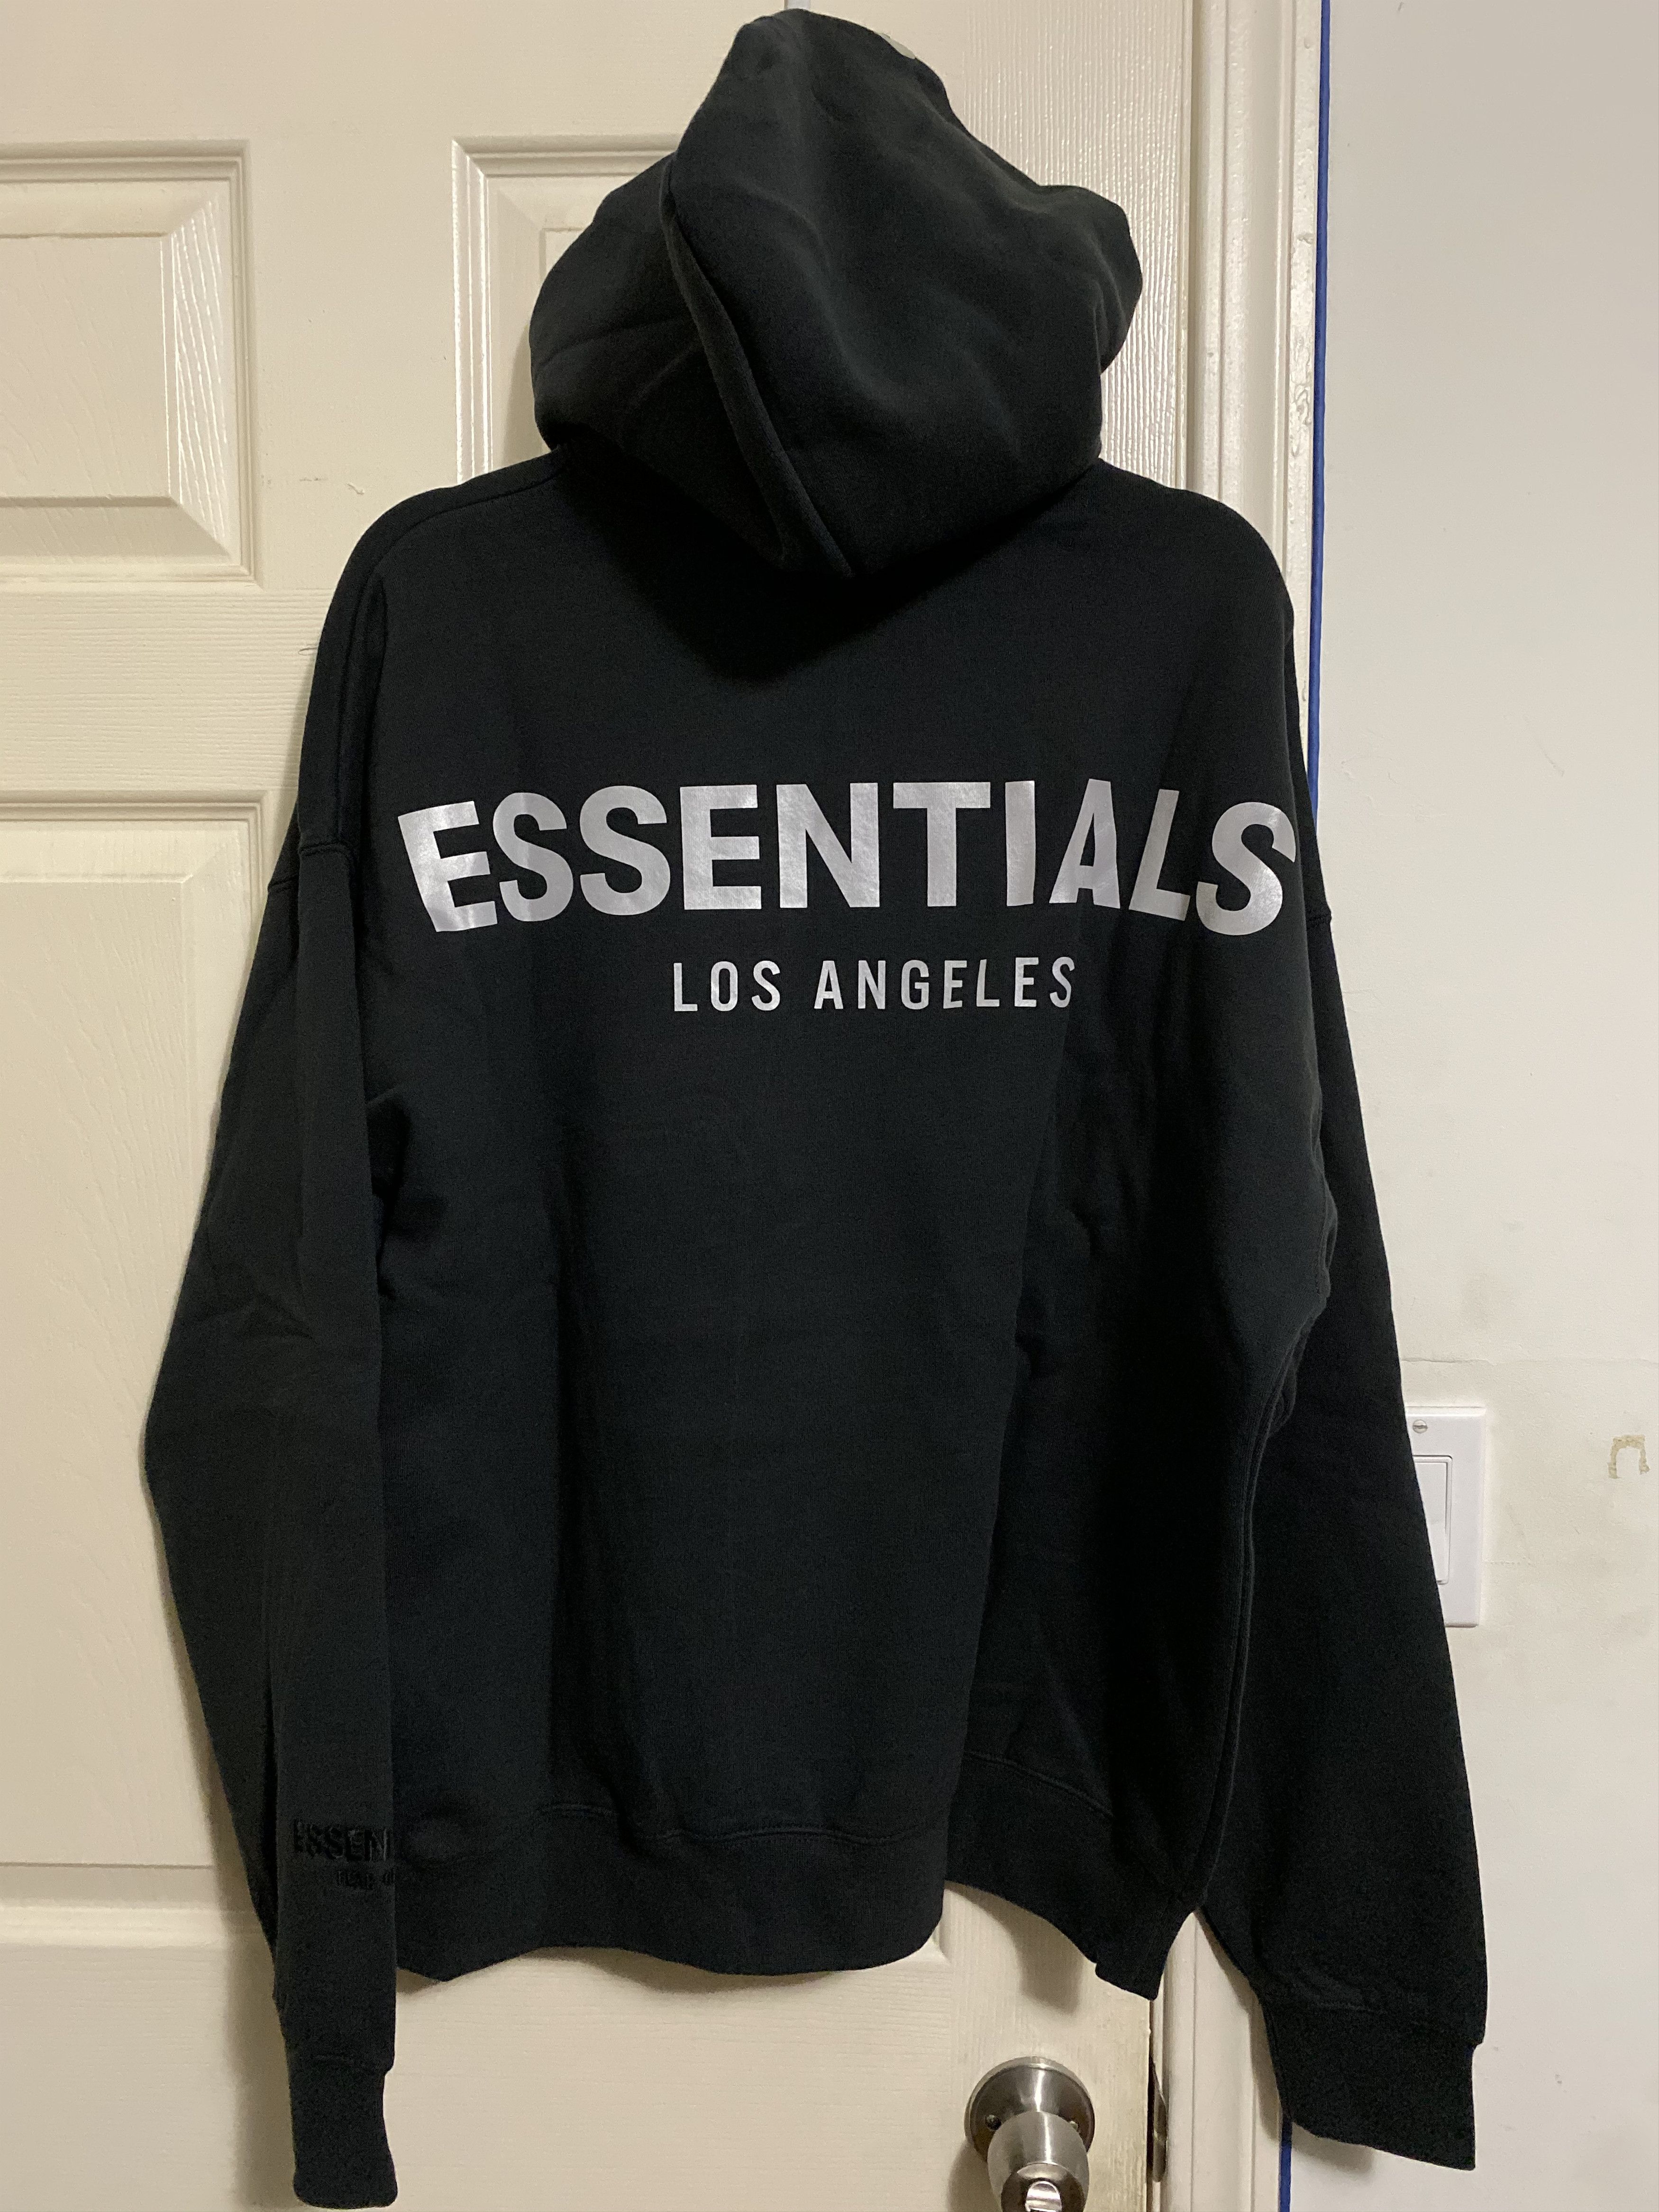 Fear of God Essential Hoodie LA *Los Angeles Exclusive* | Grailed